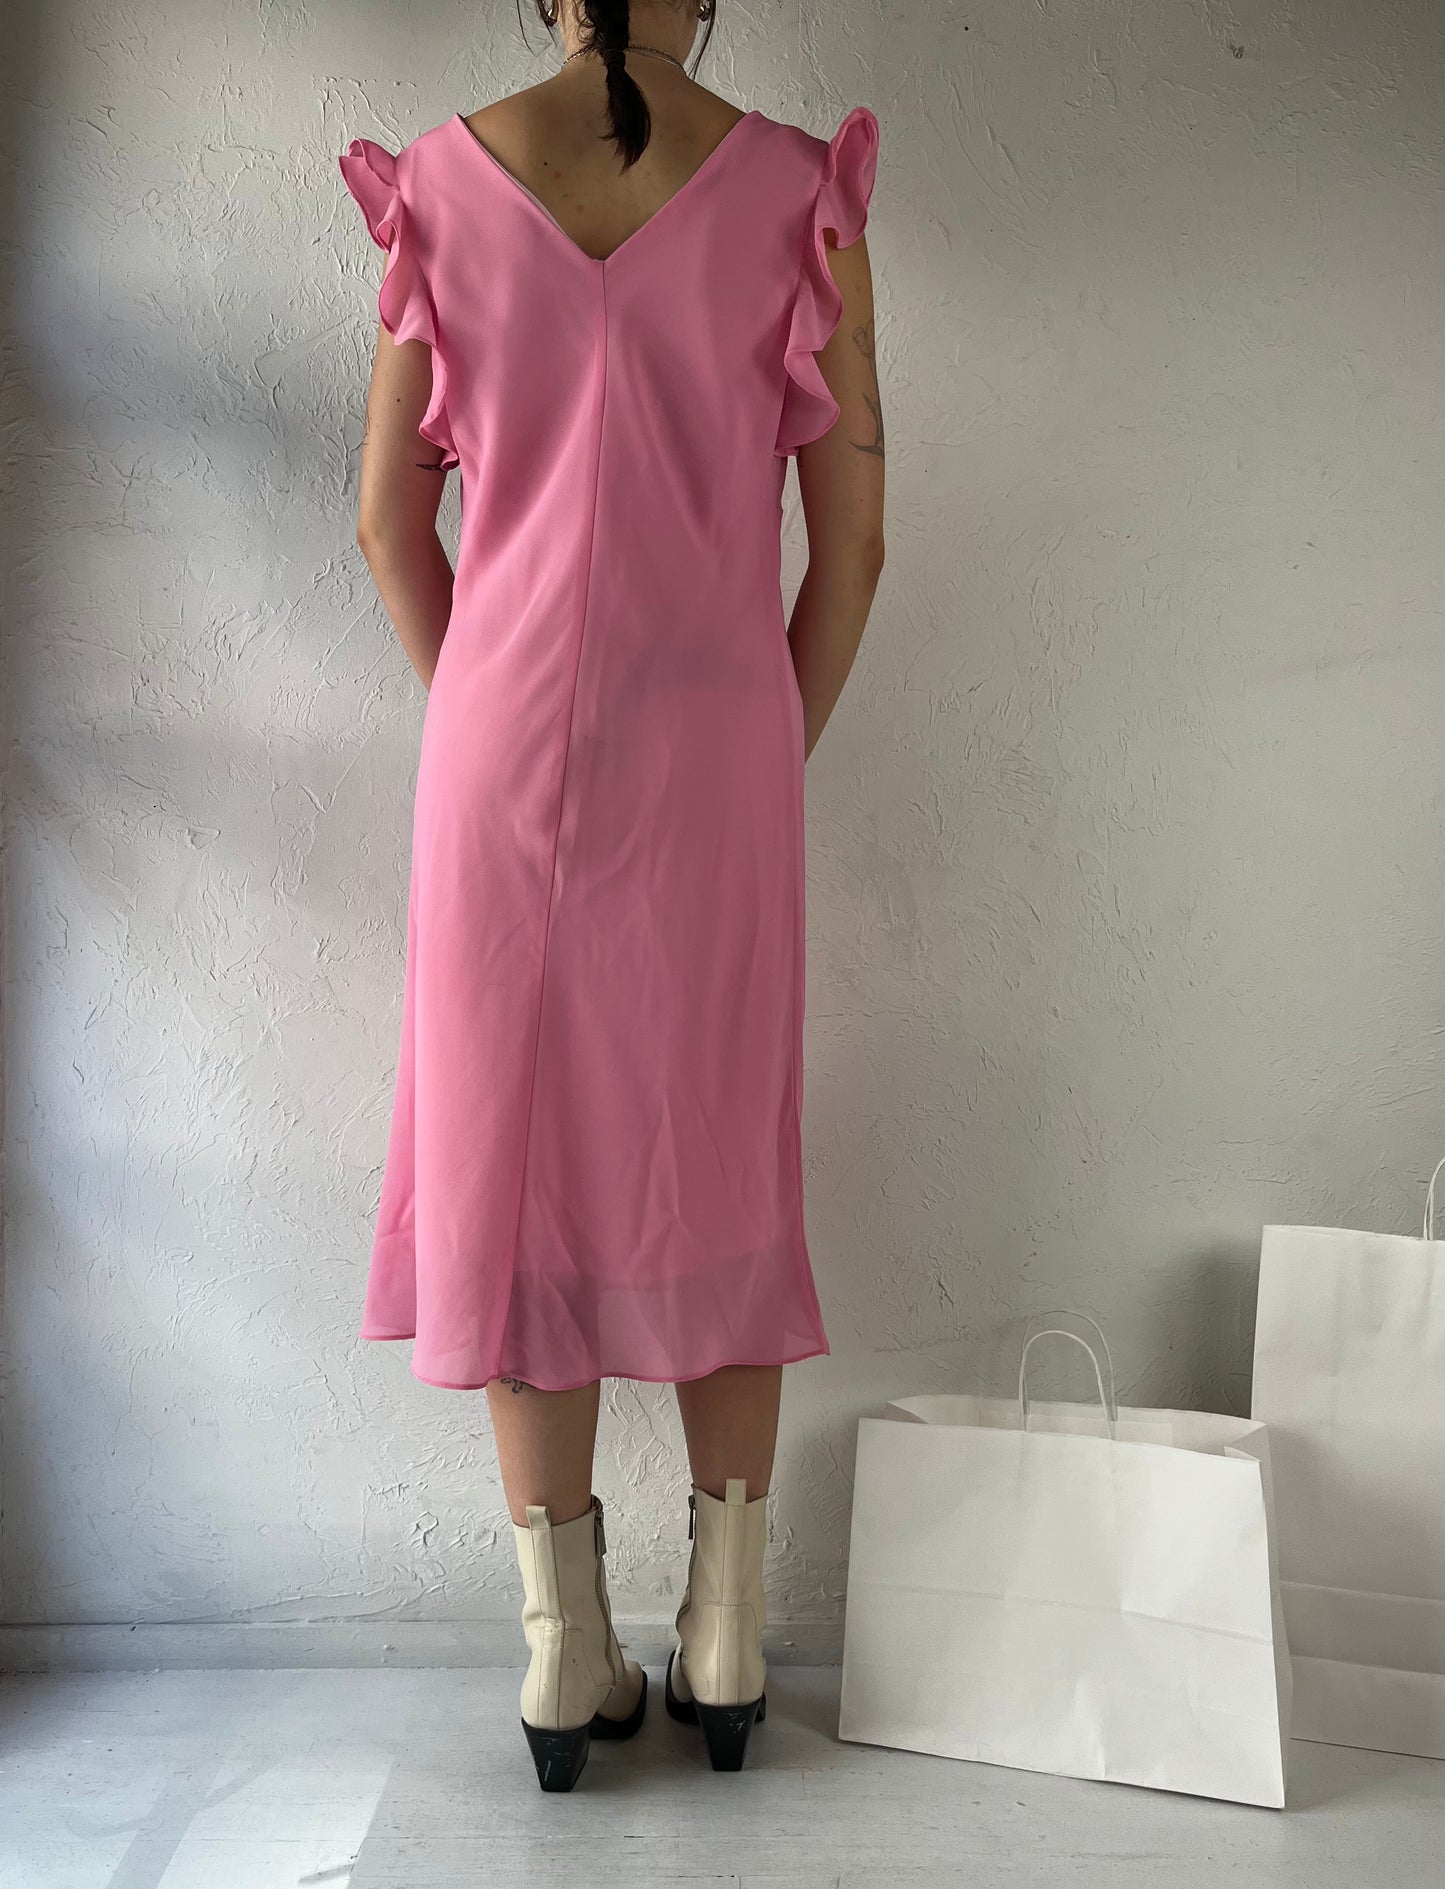 90s 'Blush' Pink Ruffle Midi Dress / Large